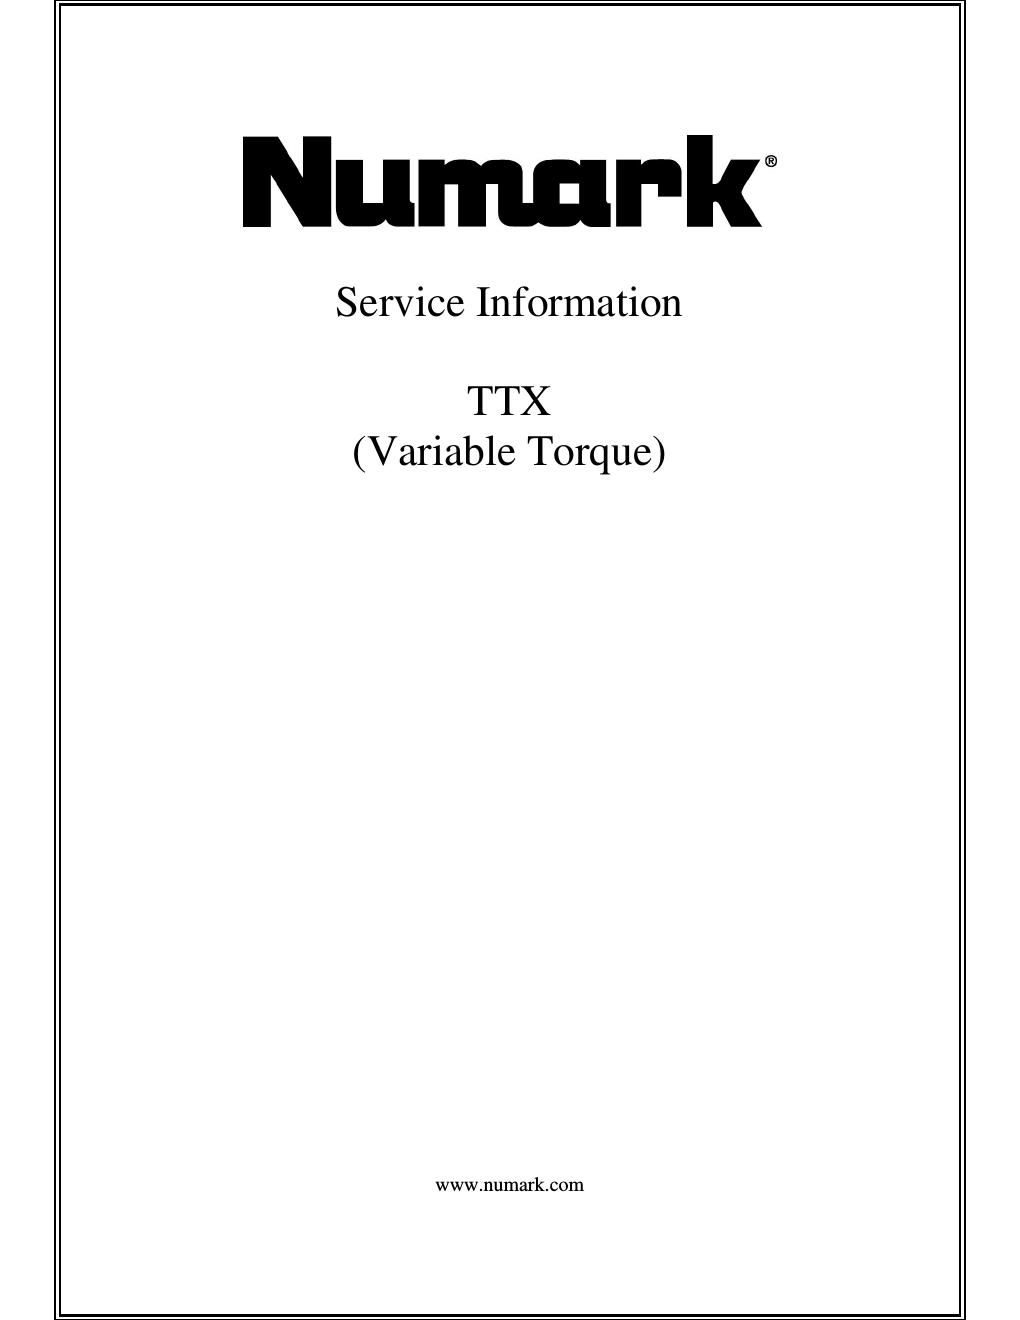 numark ttx service manual